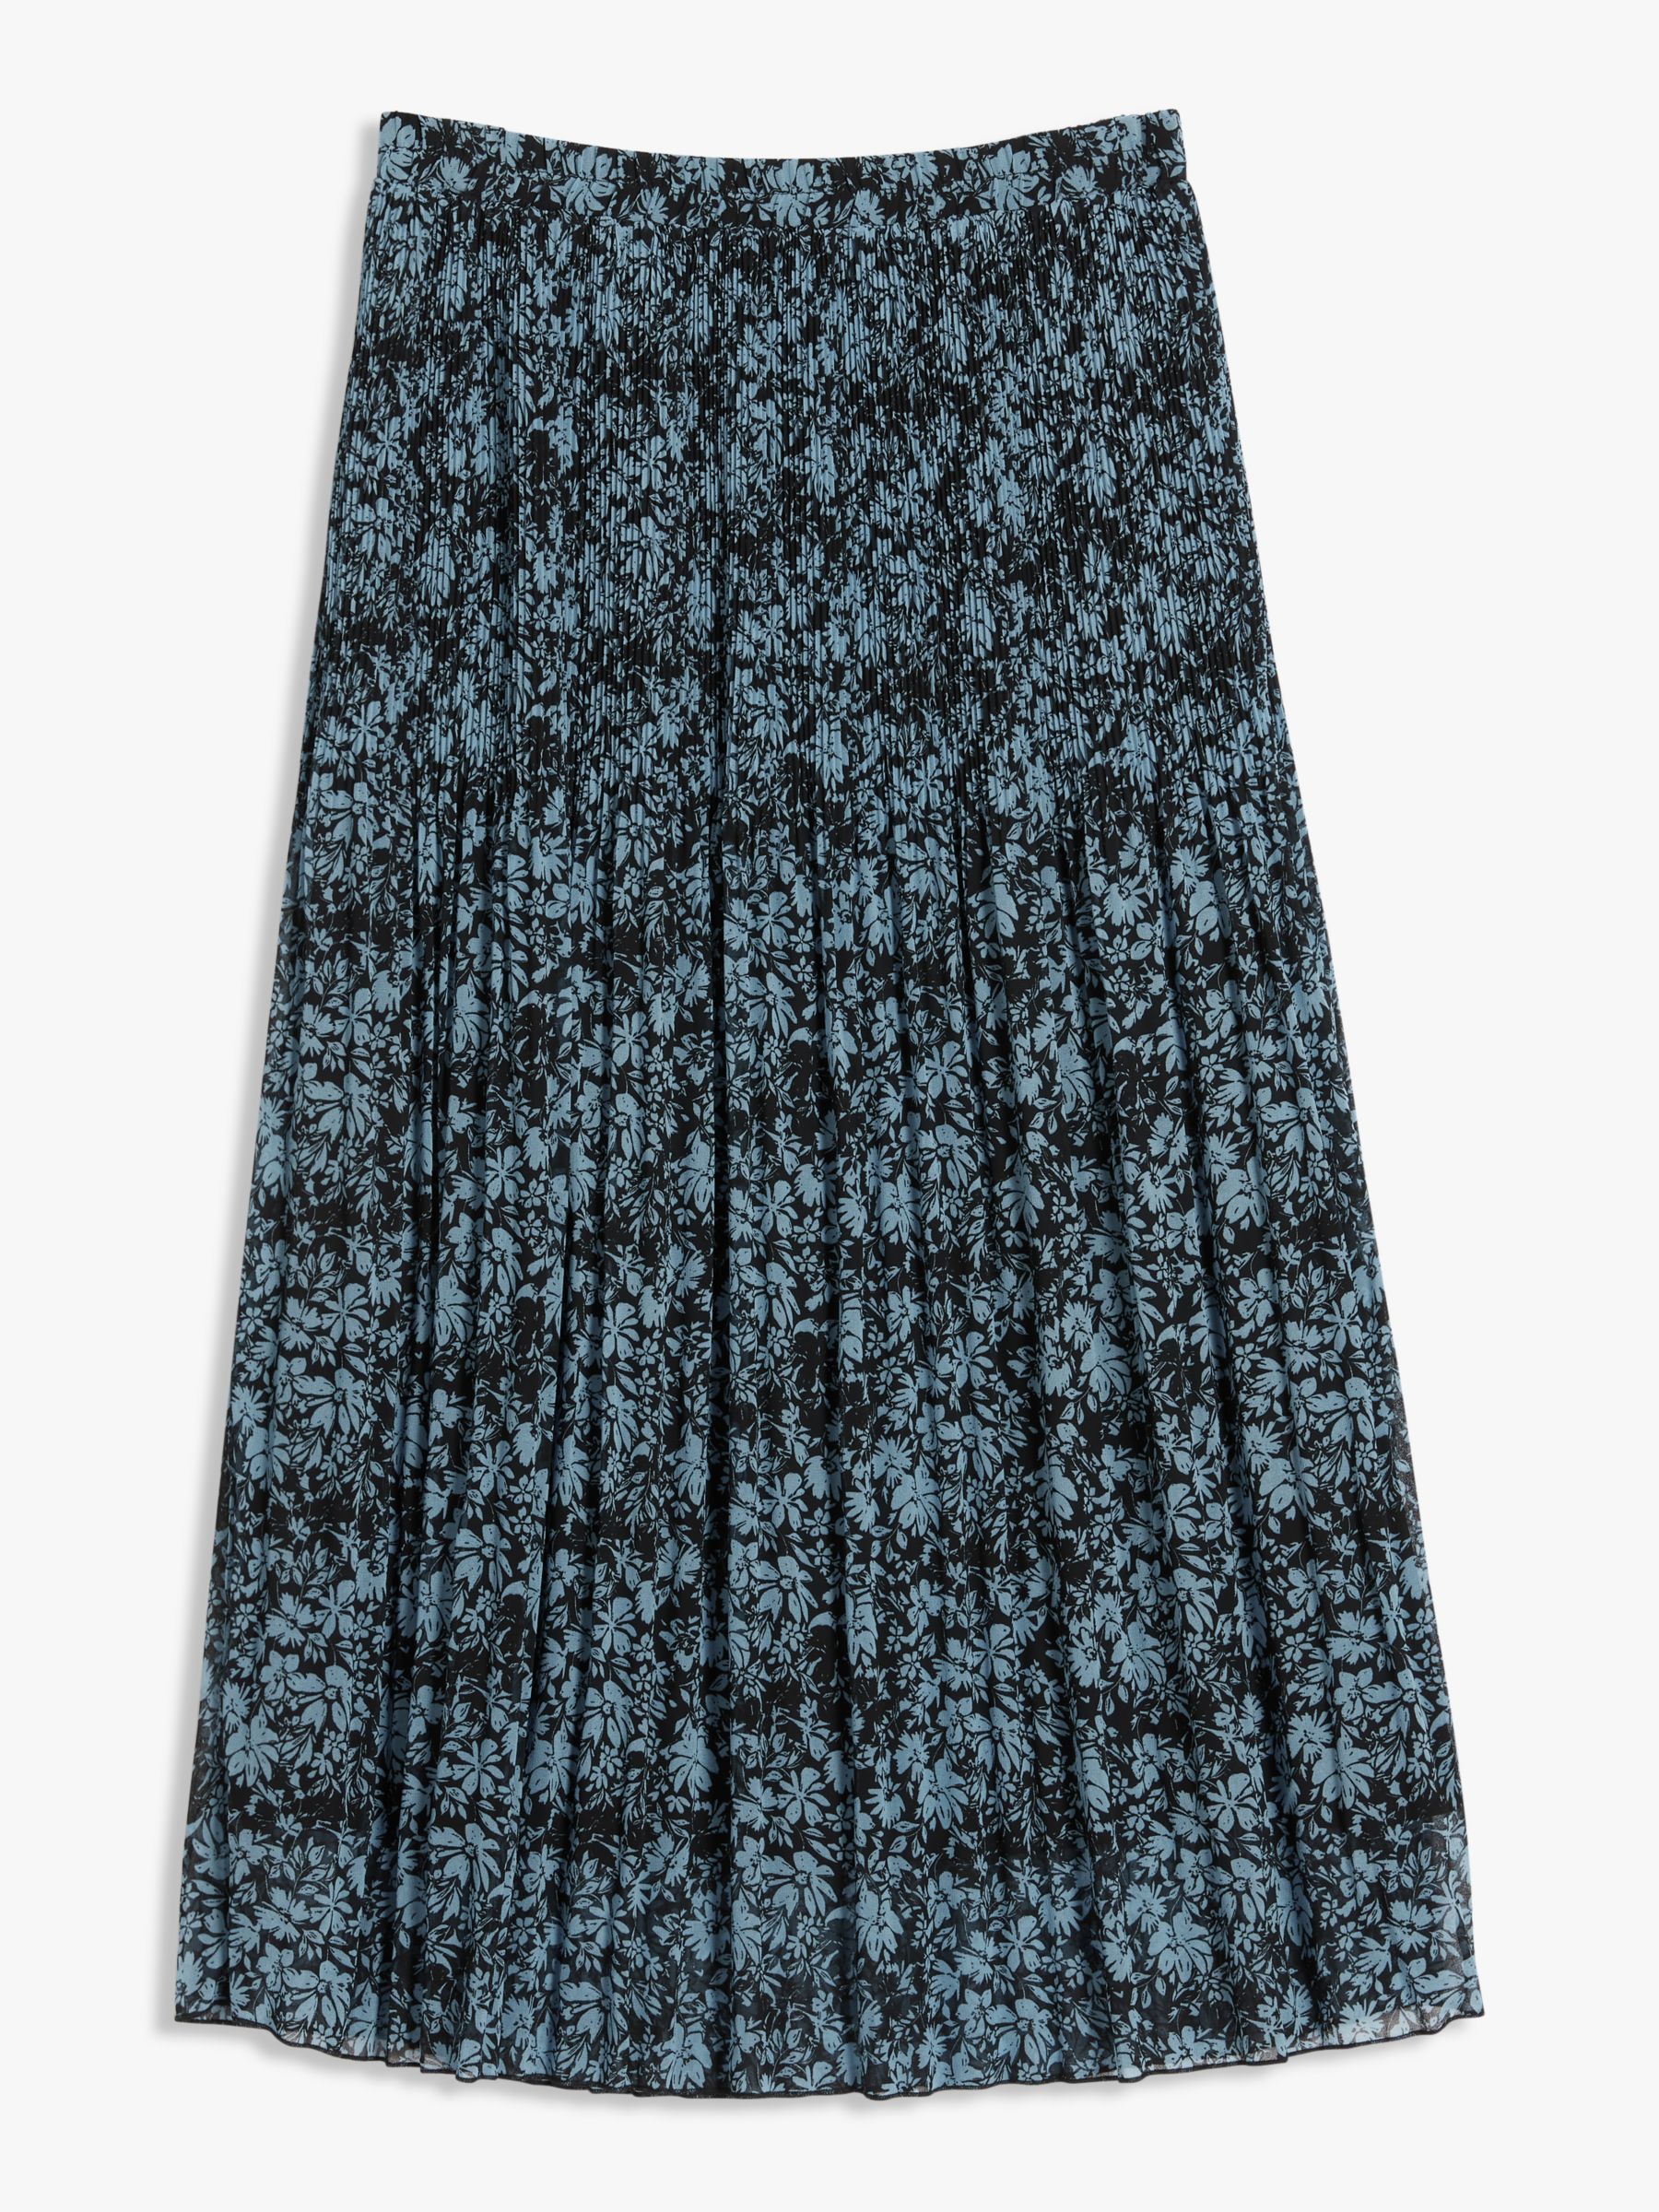 John Lewis & Partners Floral Pleated Midi Skirt, Blue/Black